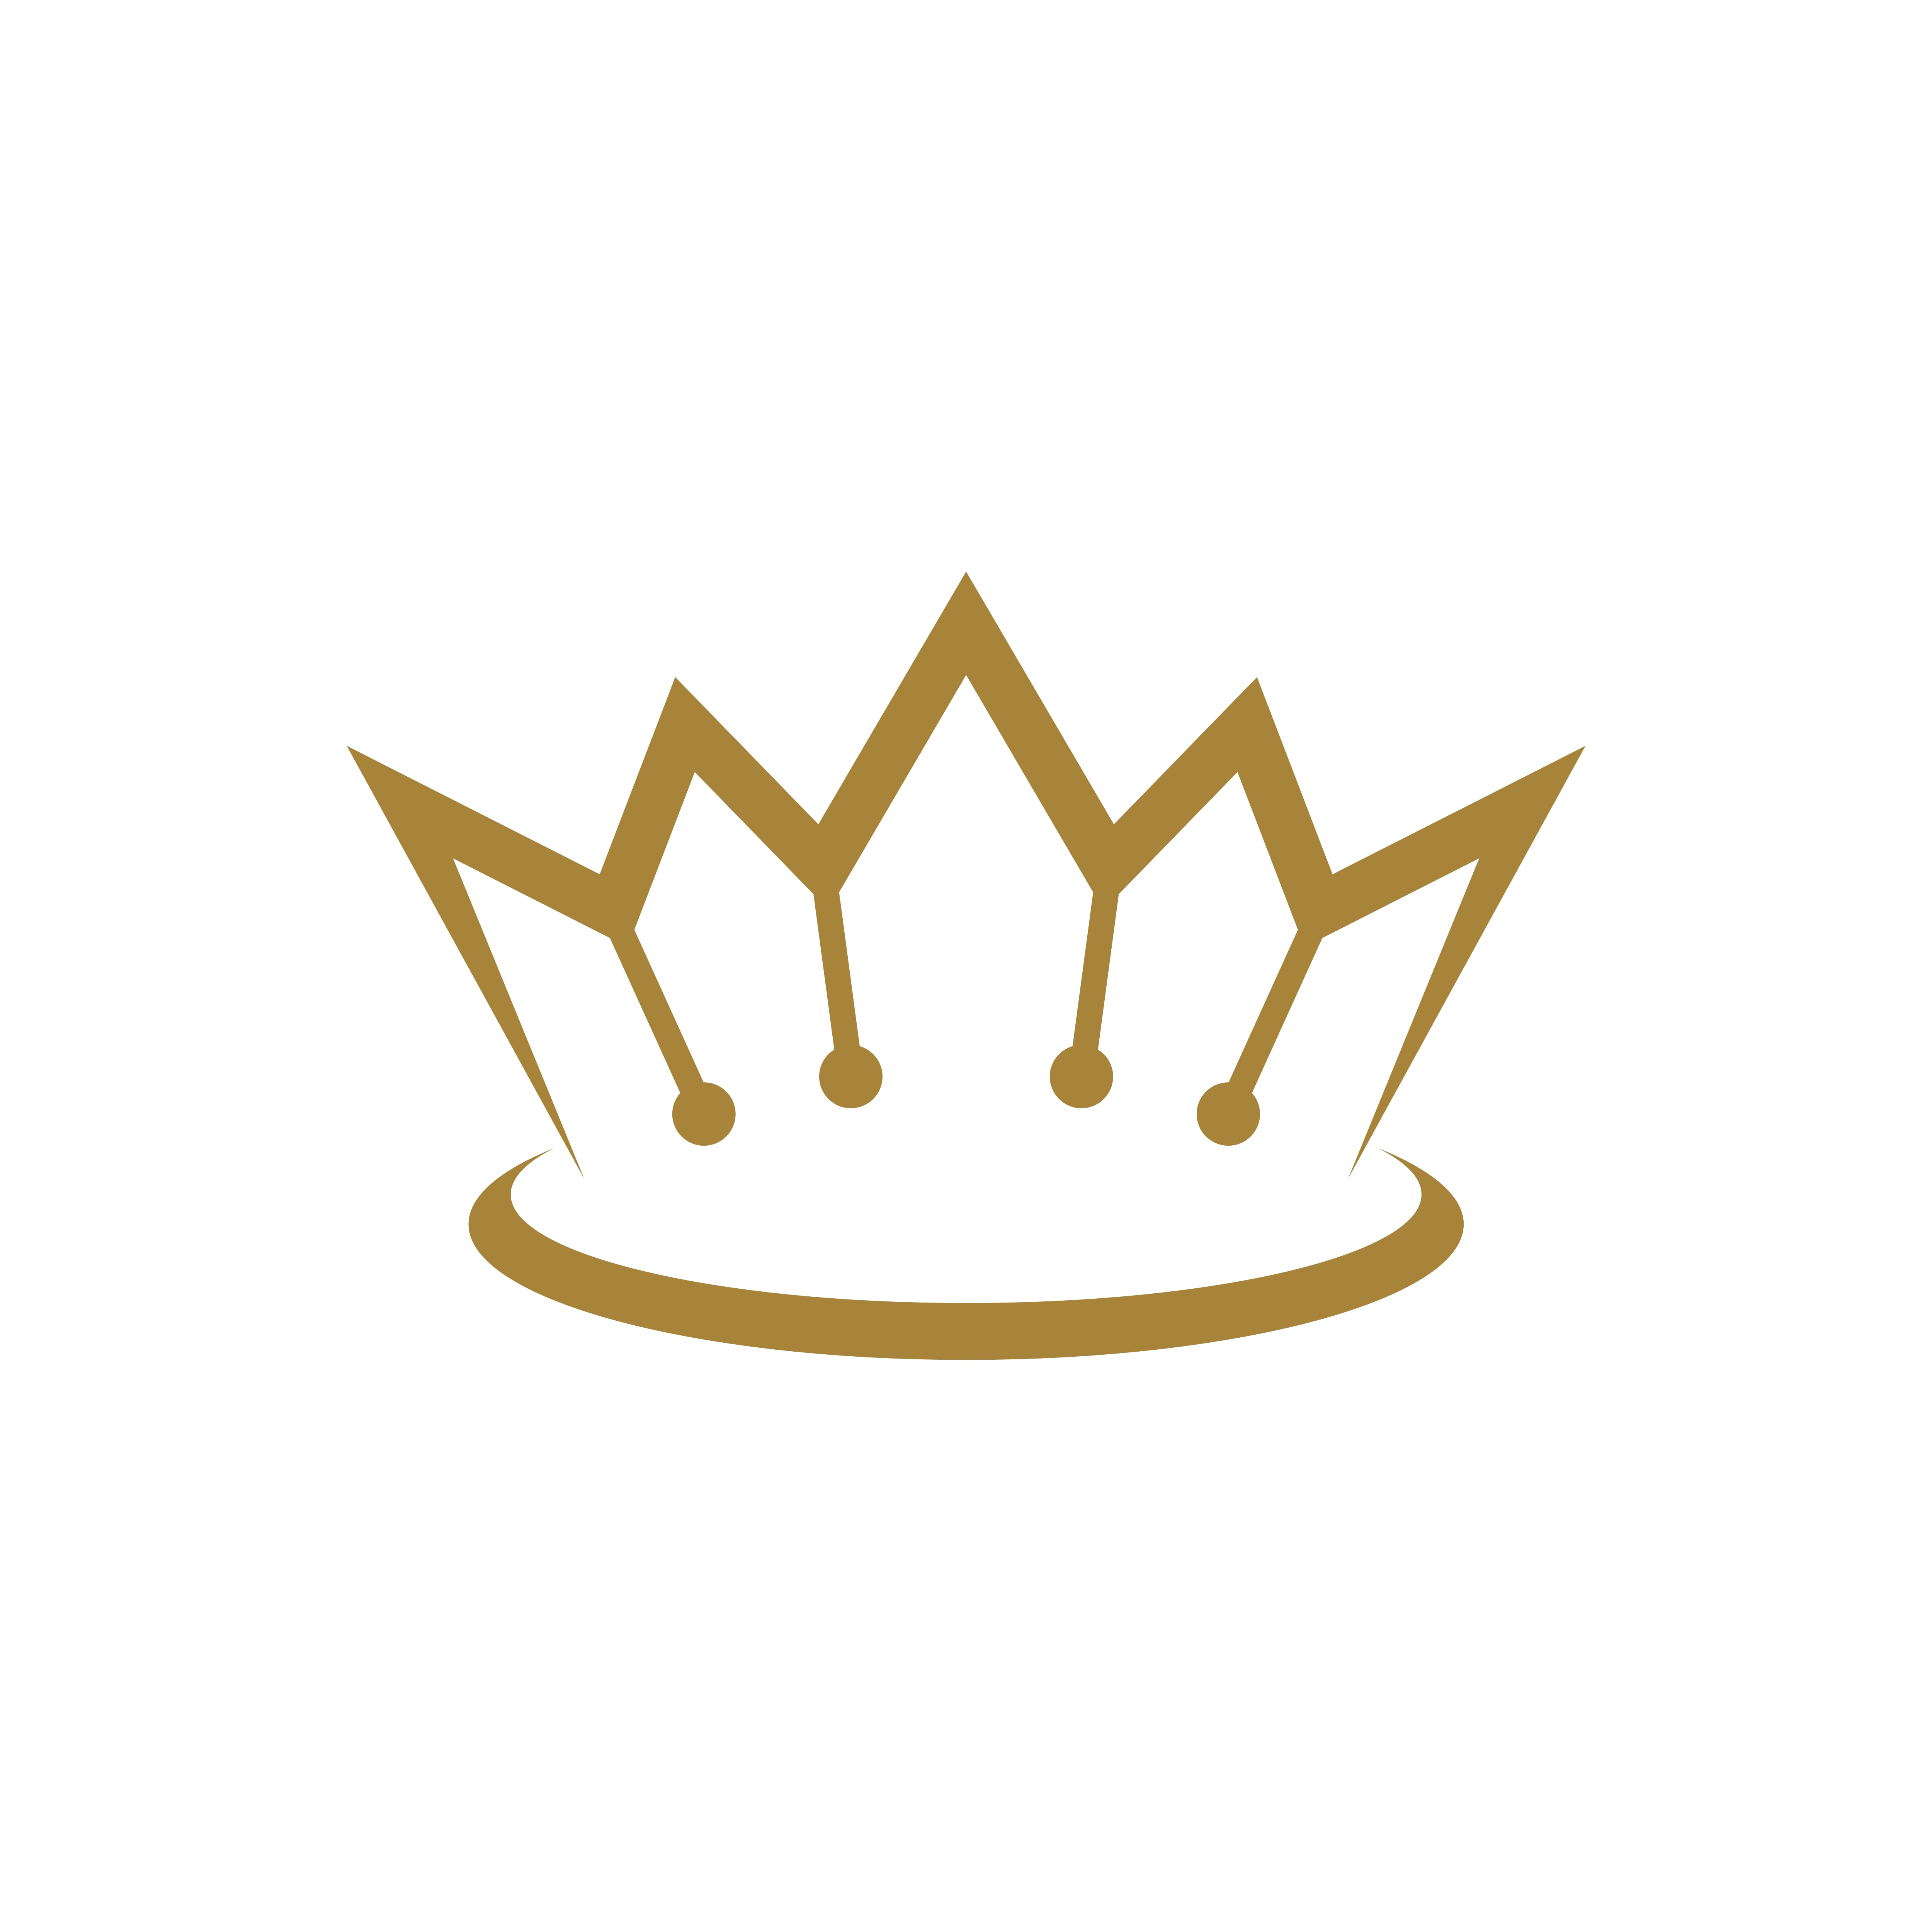 Download Gold Royal Crown Logo Template Illustration Design. Vector ...